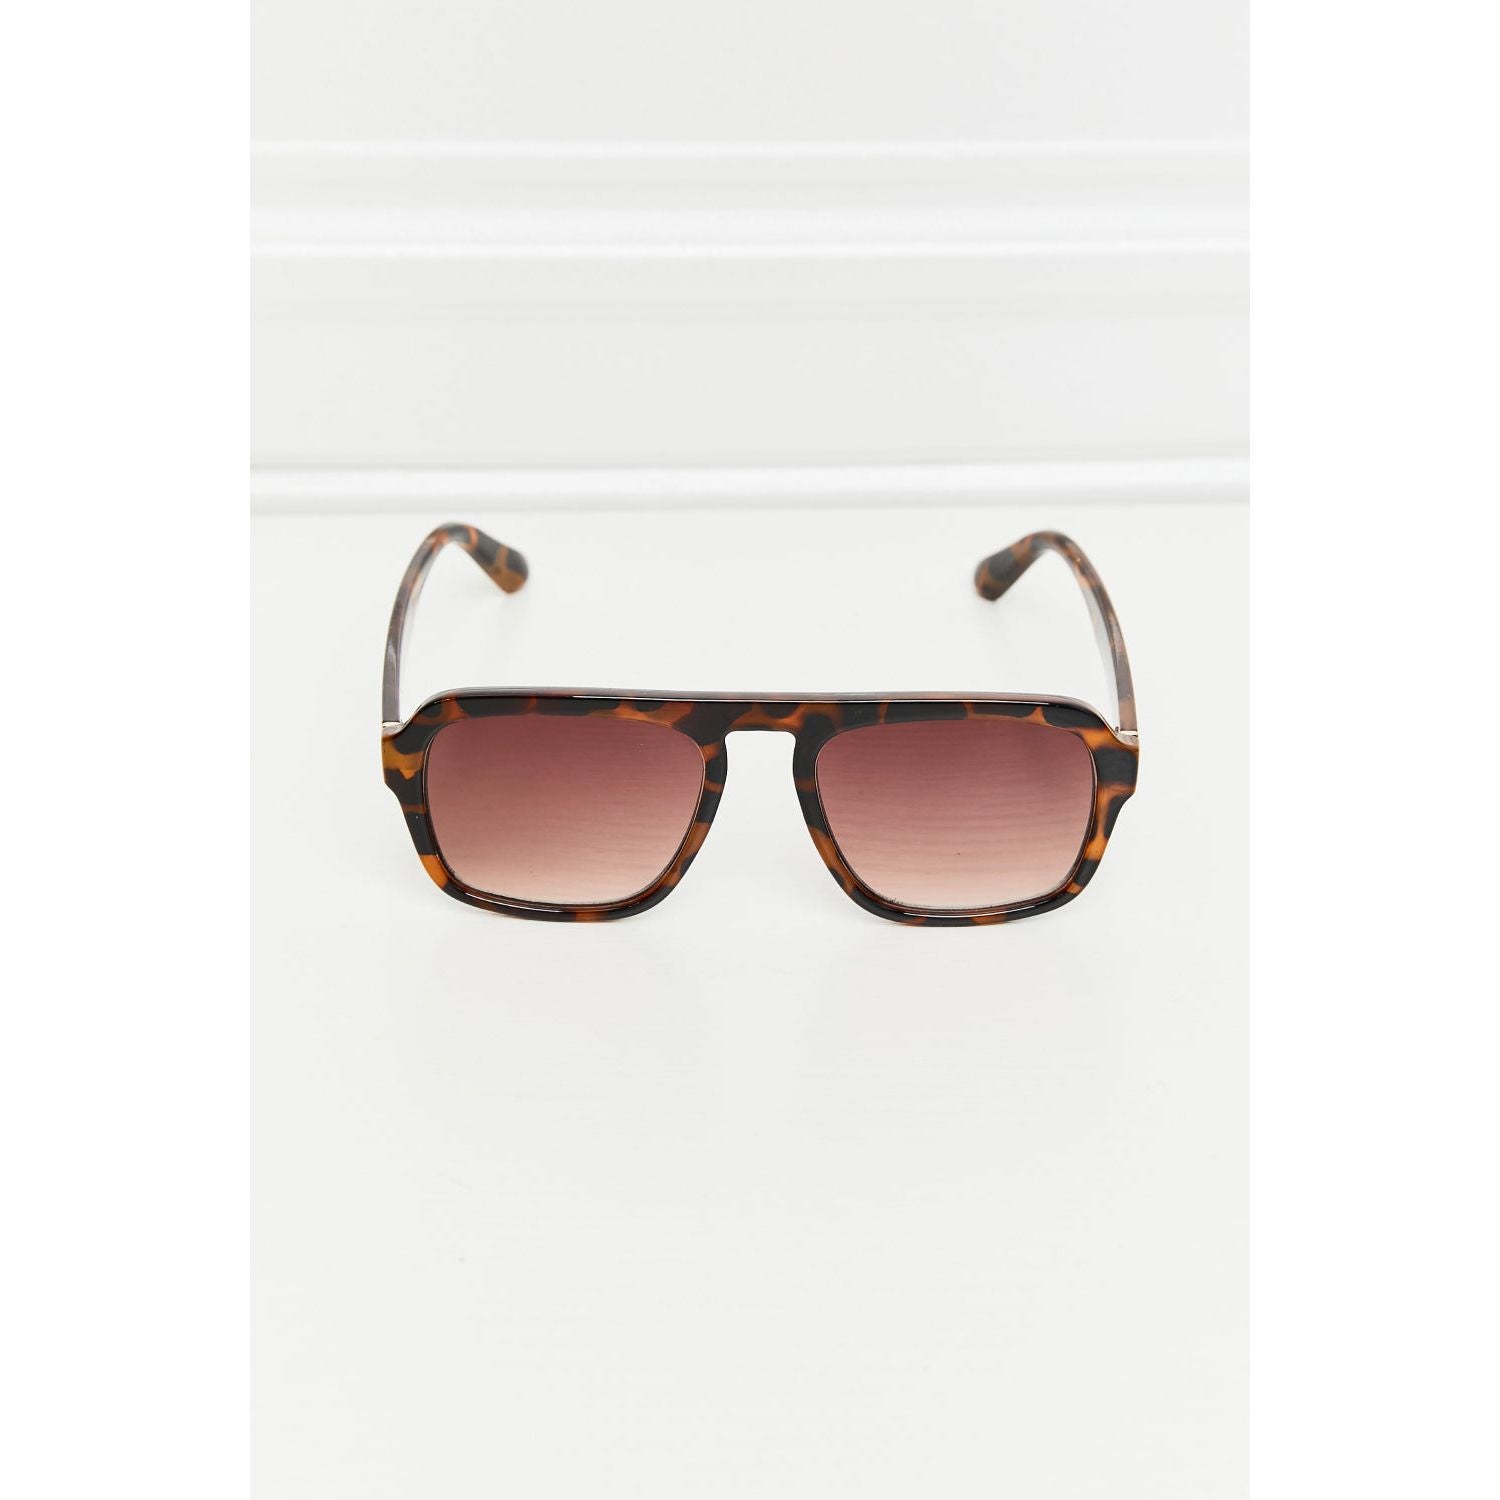 Tortoiseshell Square Polycarbonate Frame Sunglasses - TiffanyzKlozet